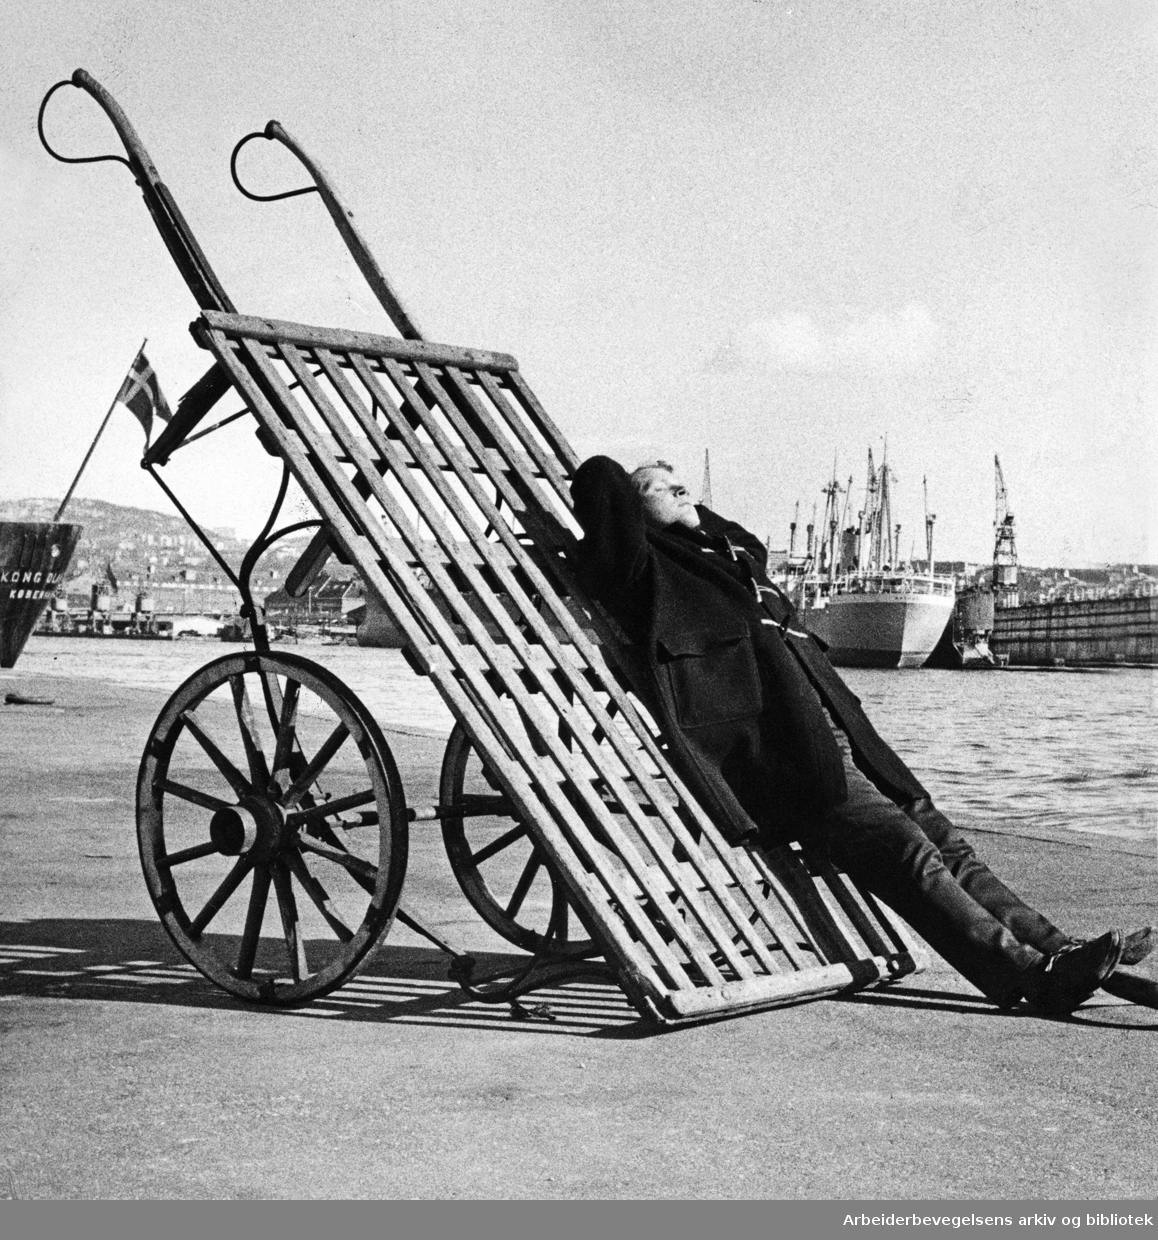 Vårlengt på Oslo havn. Mars 1967